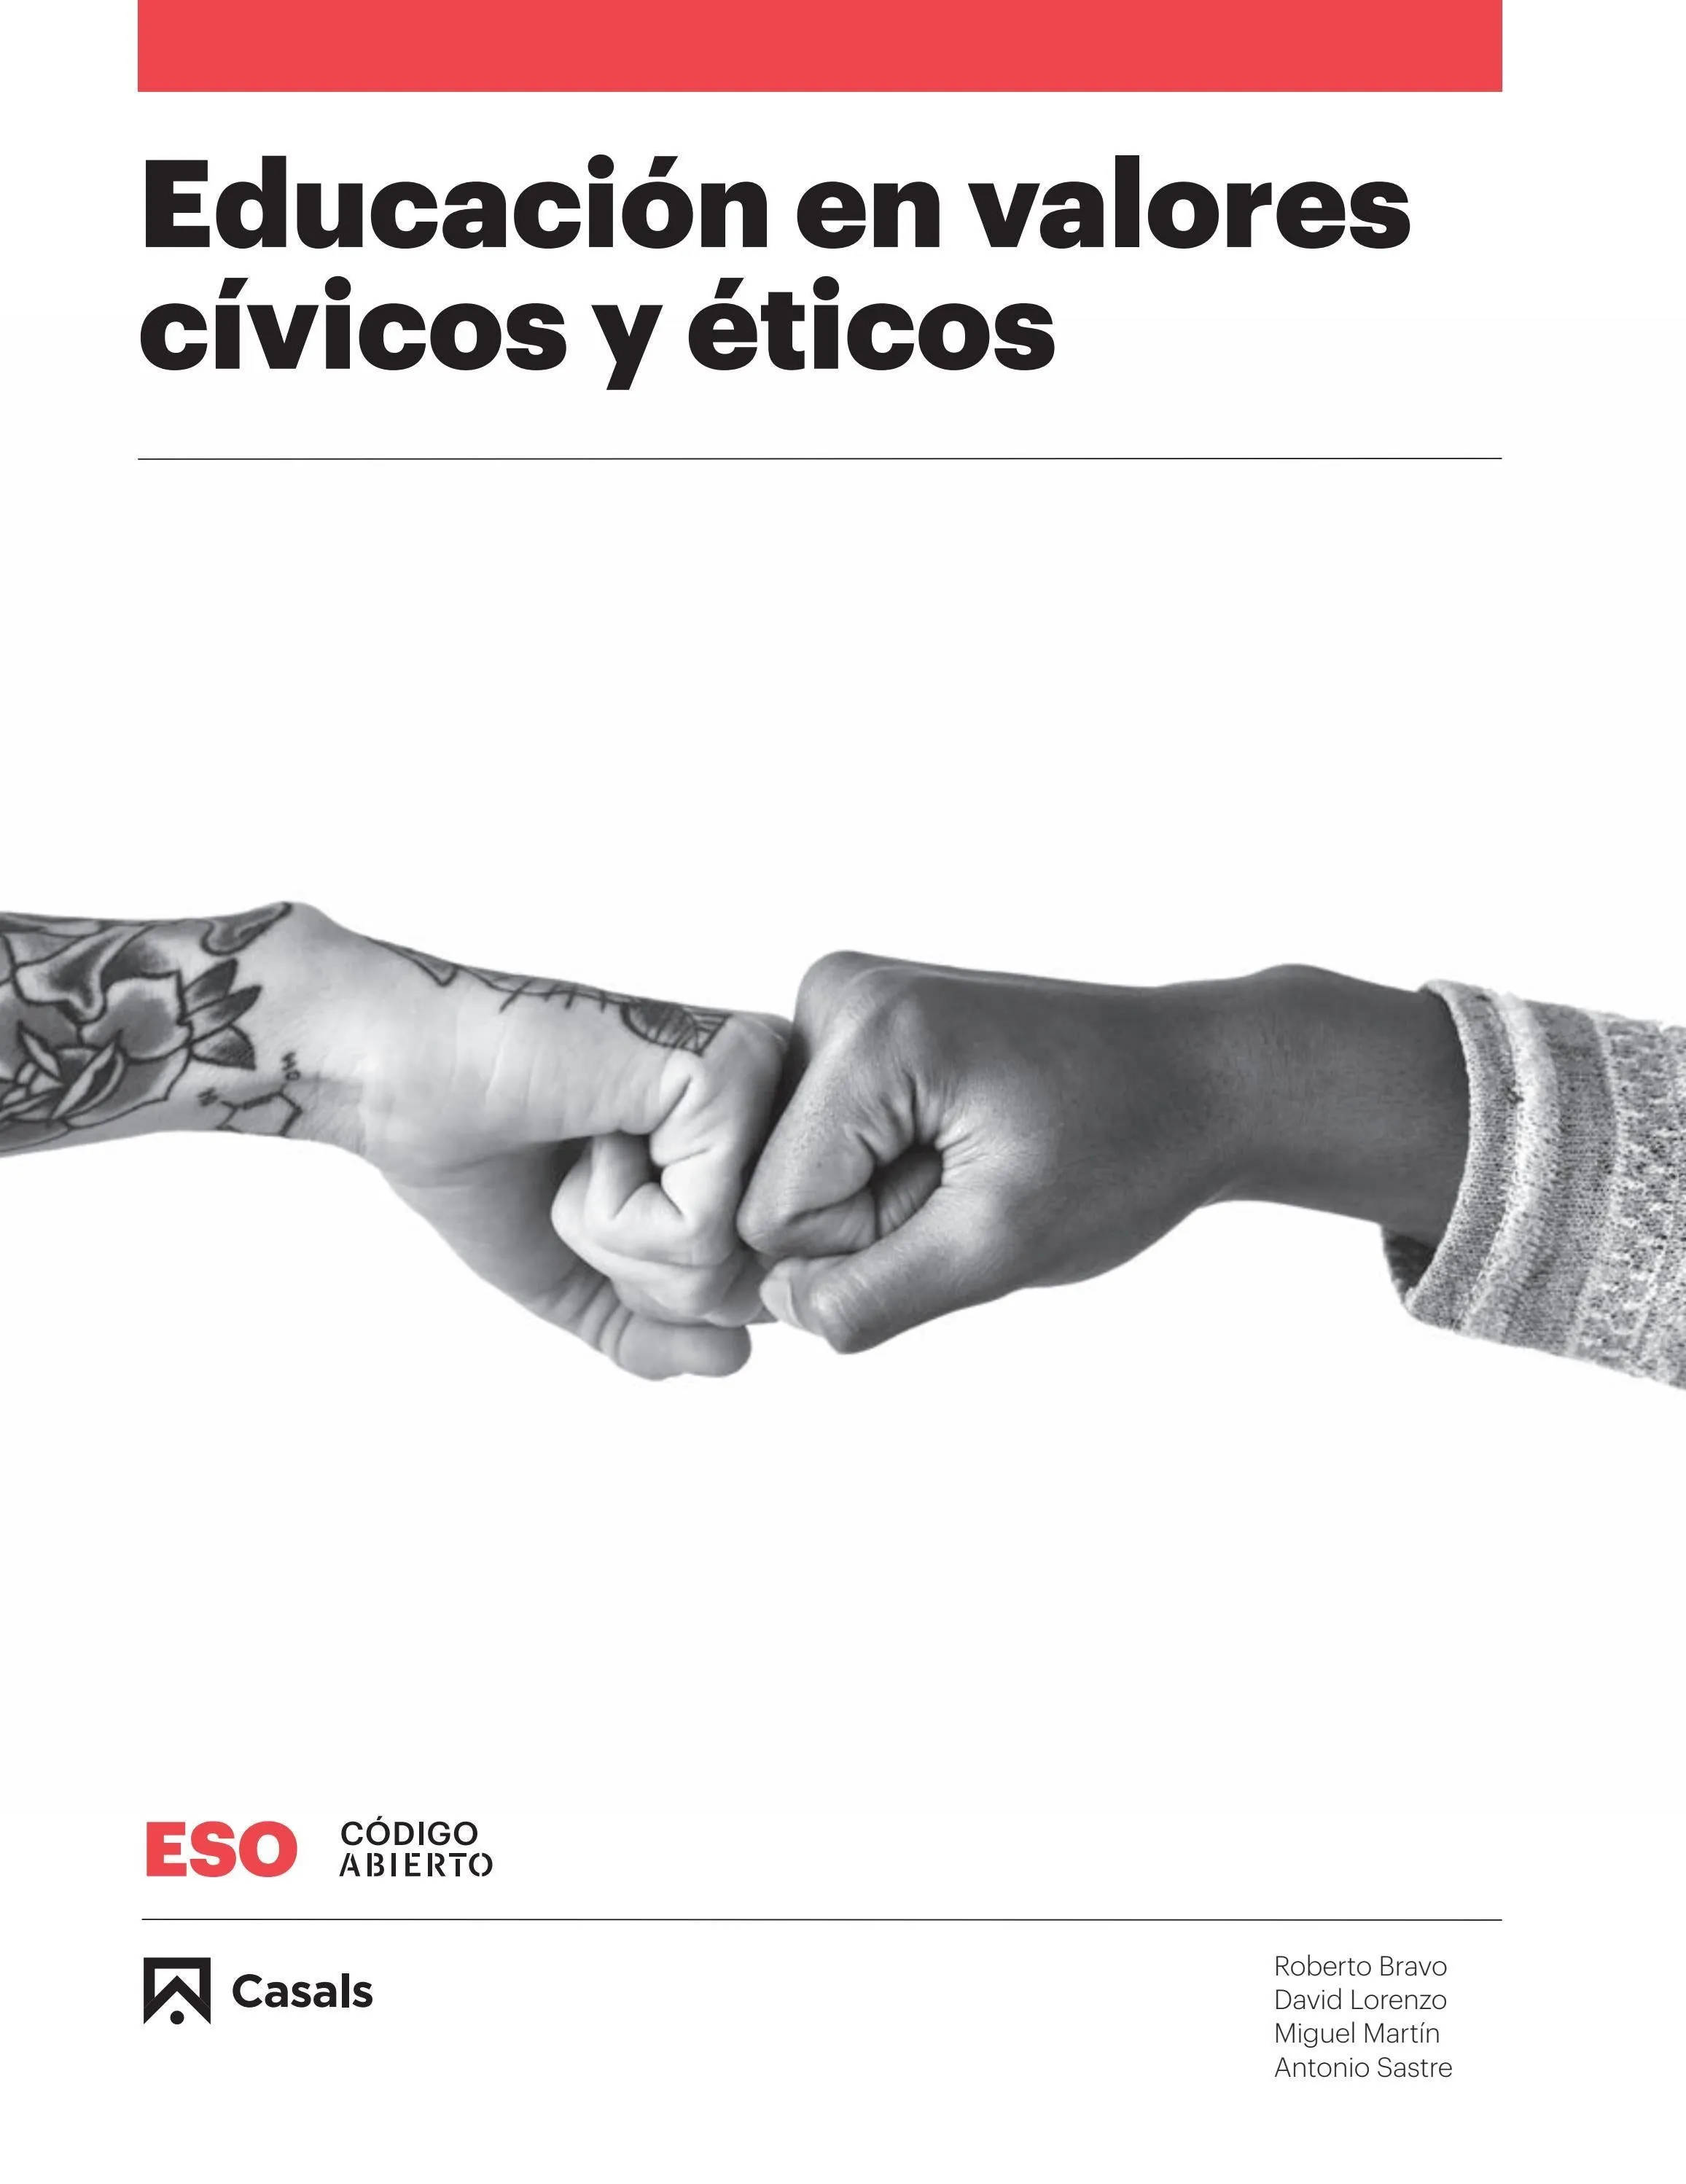 Educación en valores cívicos y éticos by Editorial Casals - Issuu